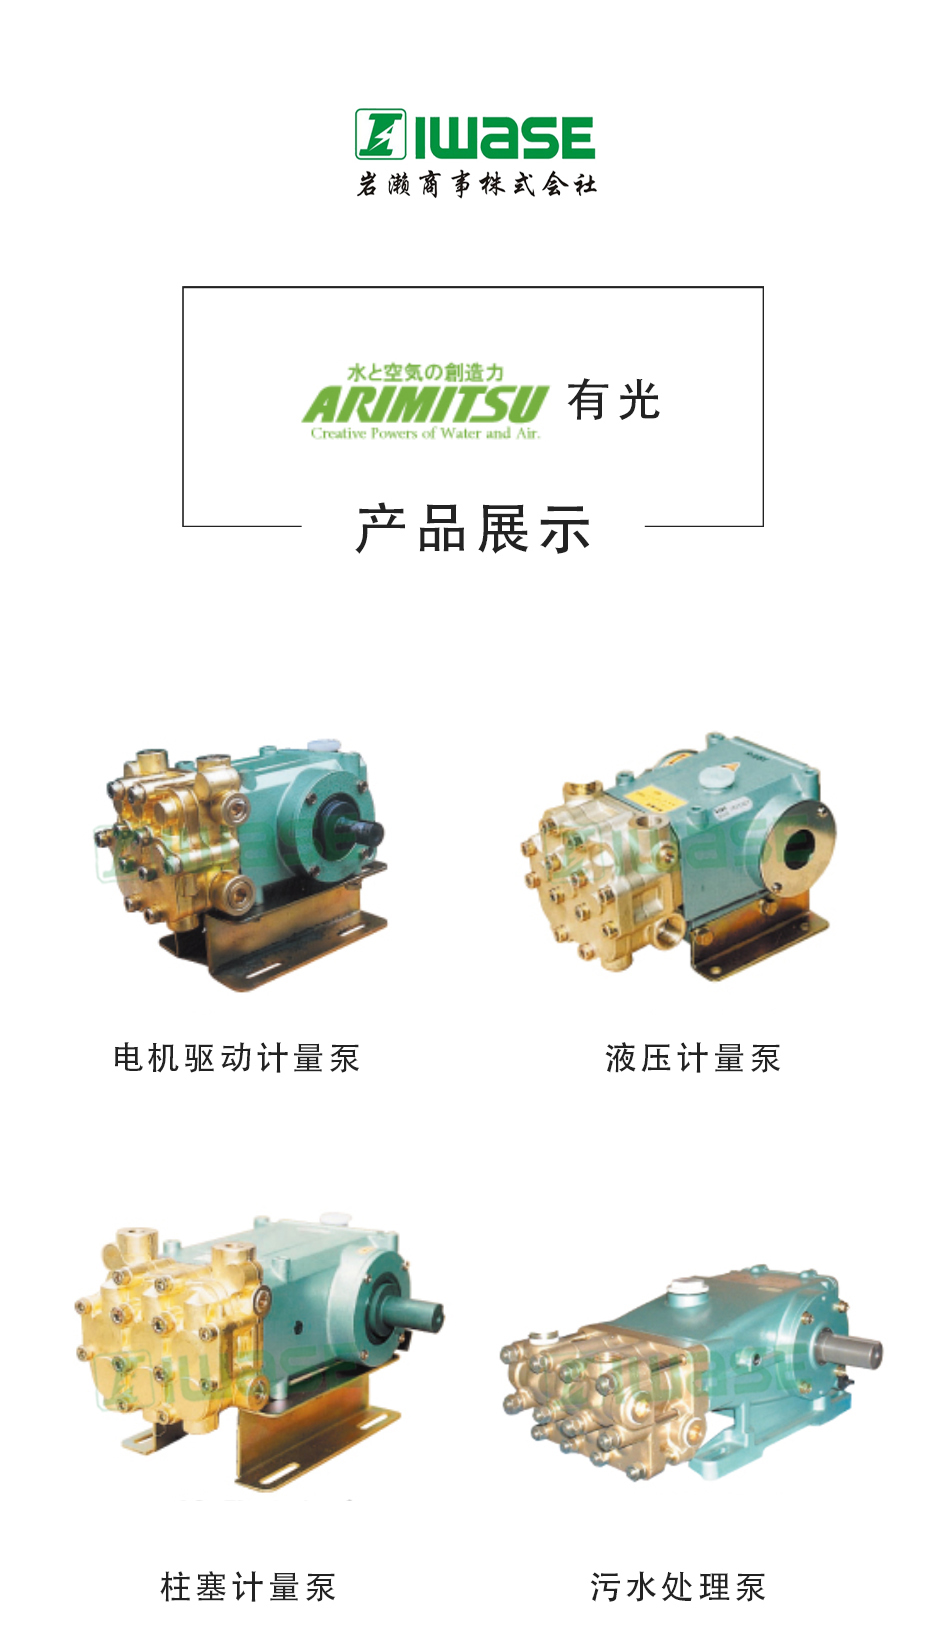 ARIMITSU有光/不锈钢化工泵/柱塞泵/C-151H65